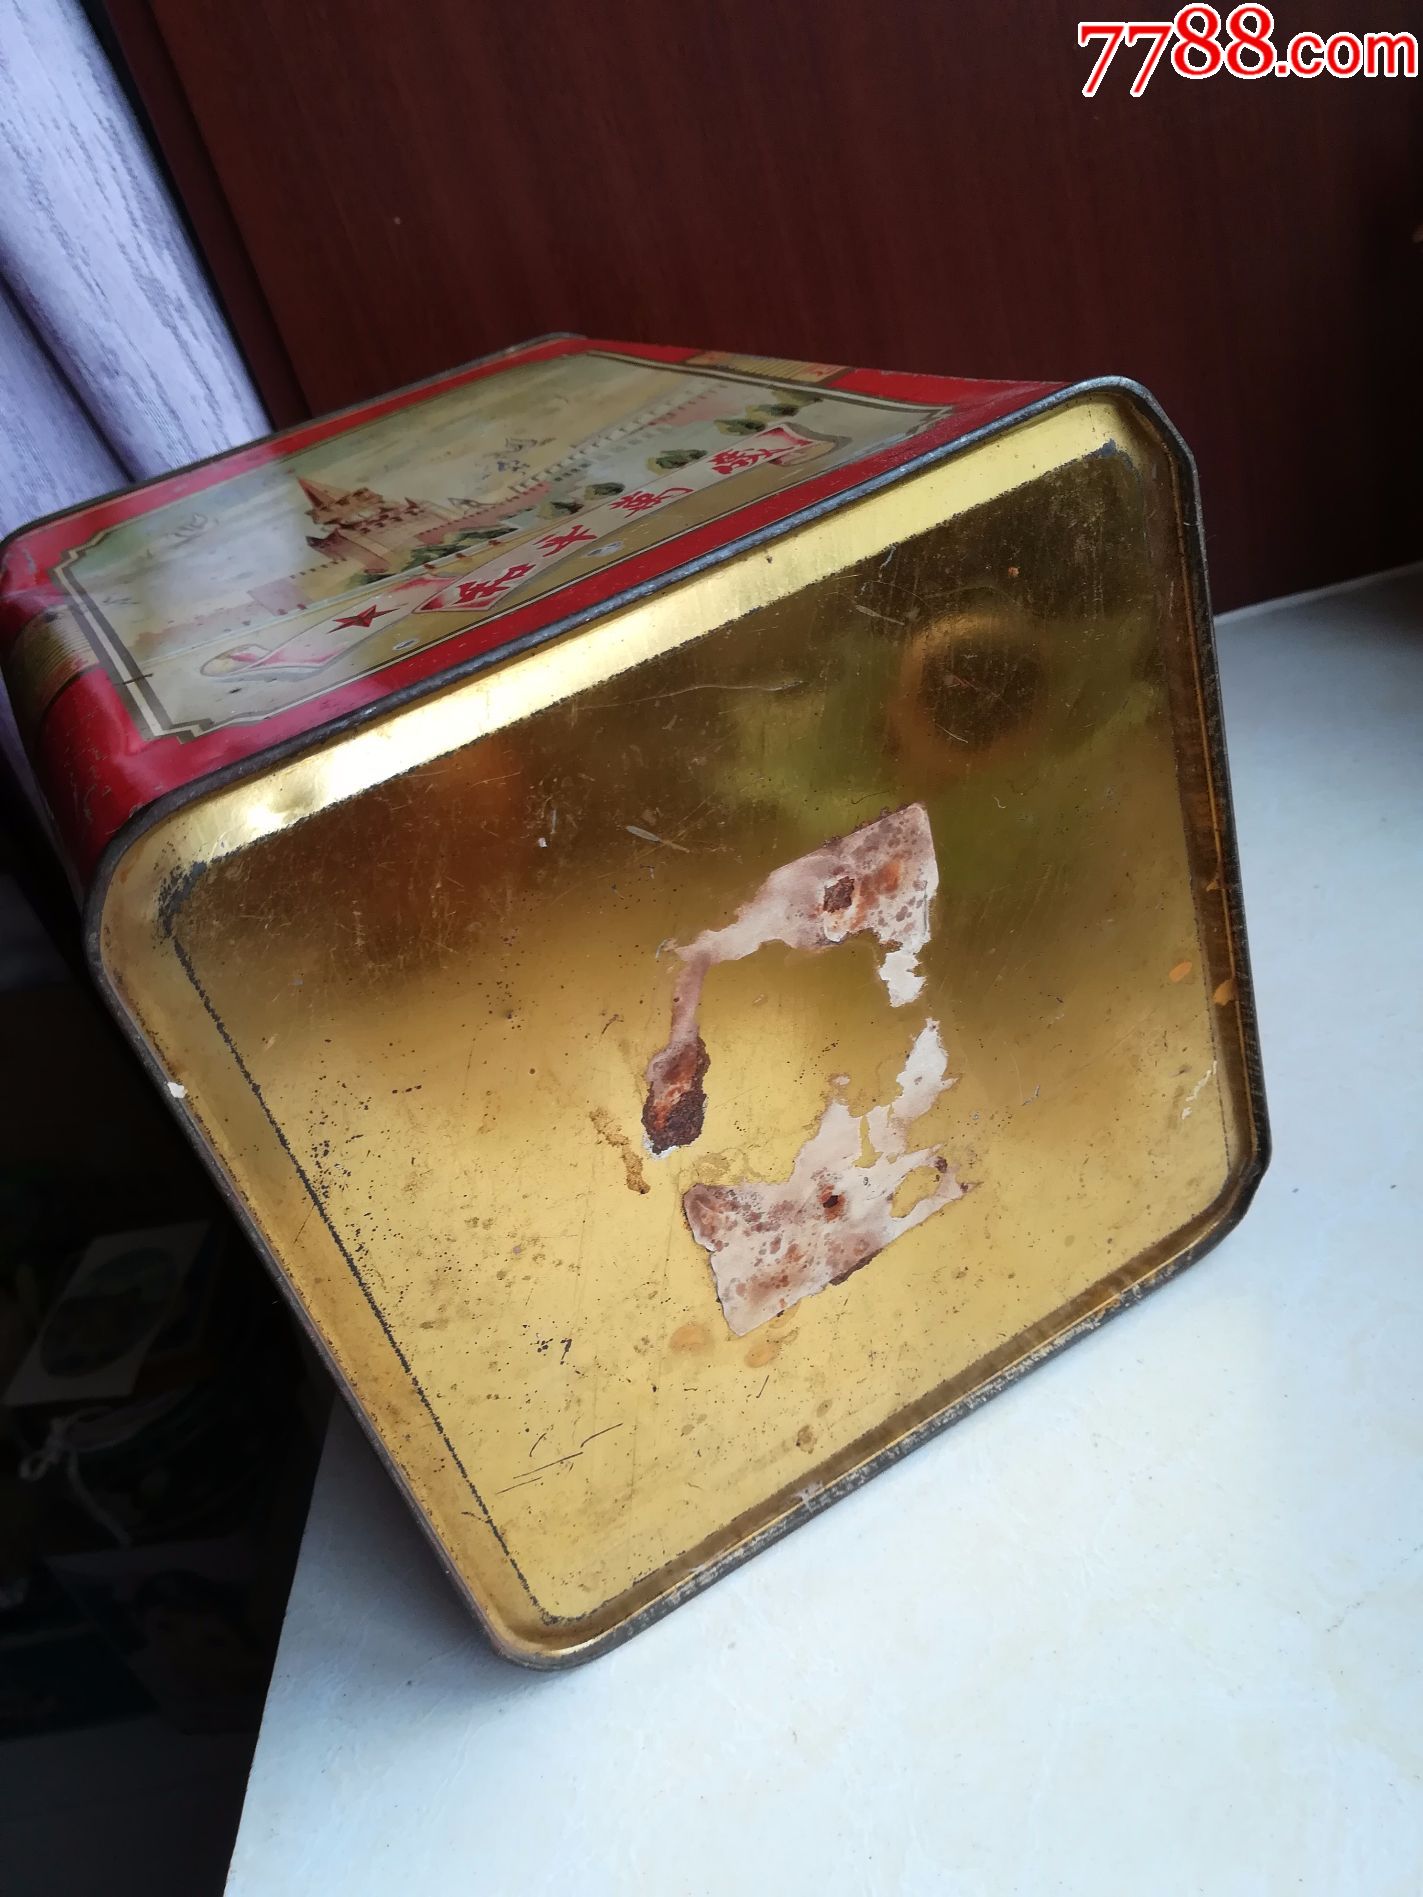 怀旧经典收藏五十年代和平万岁和平鸽图案糖果饼干老铁盒